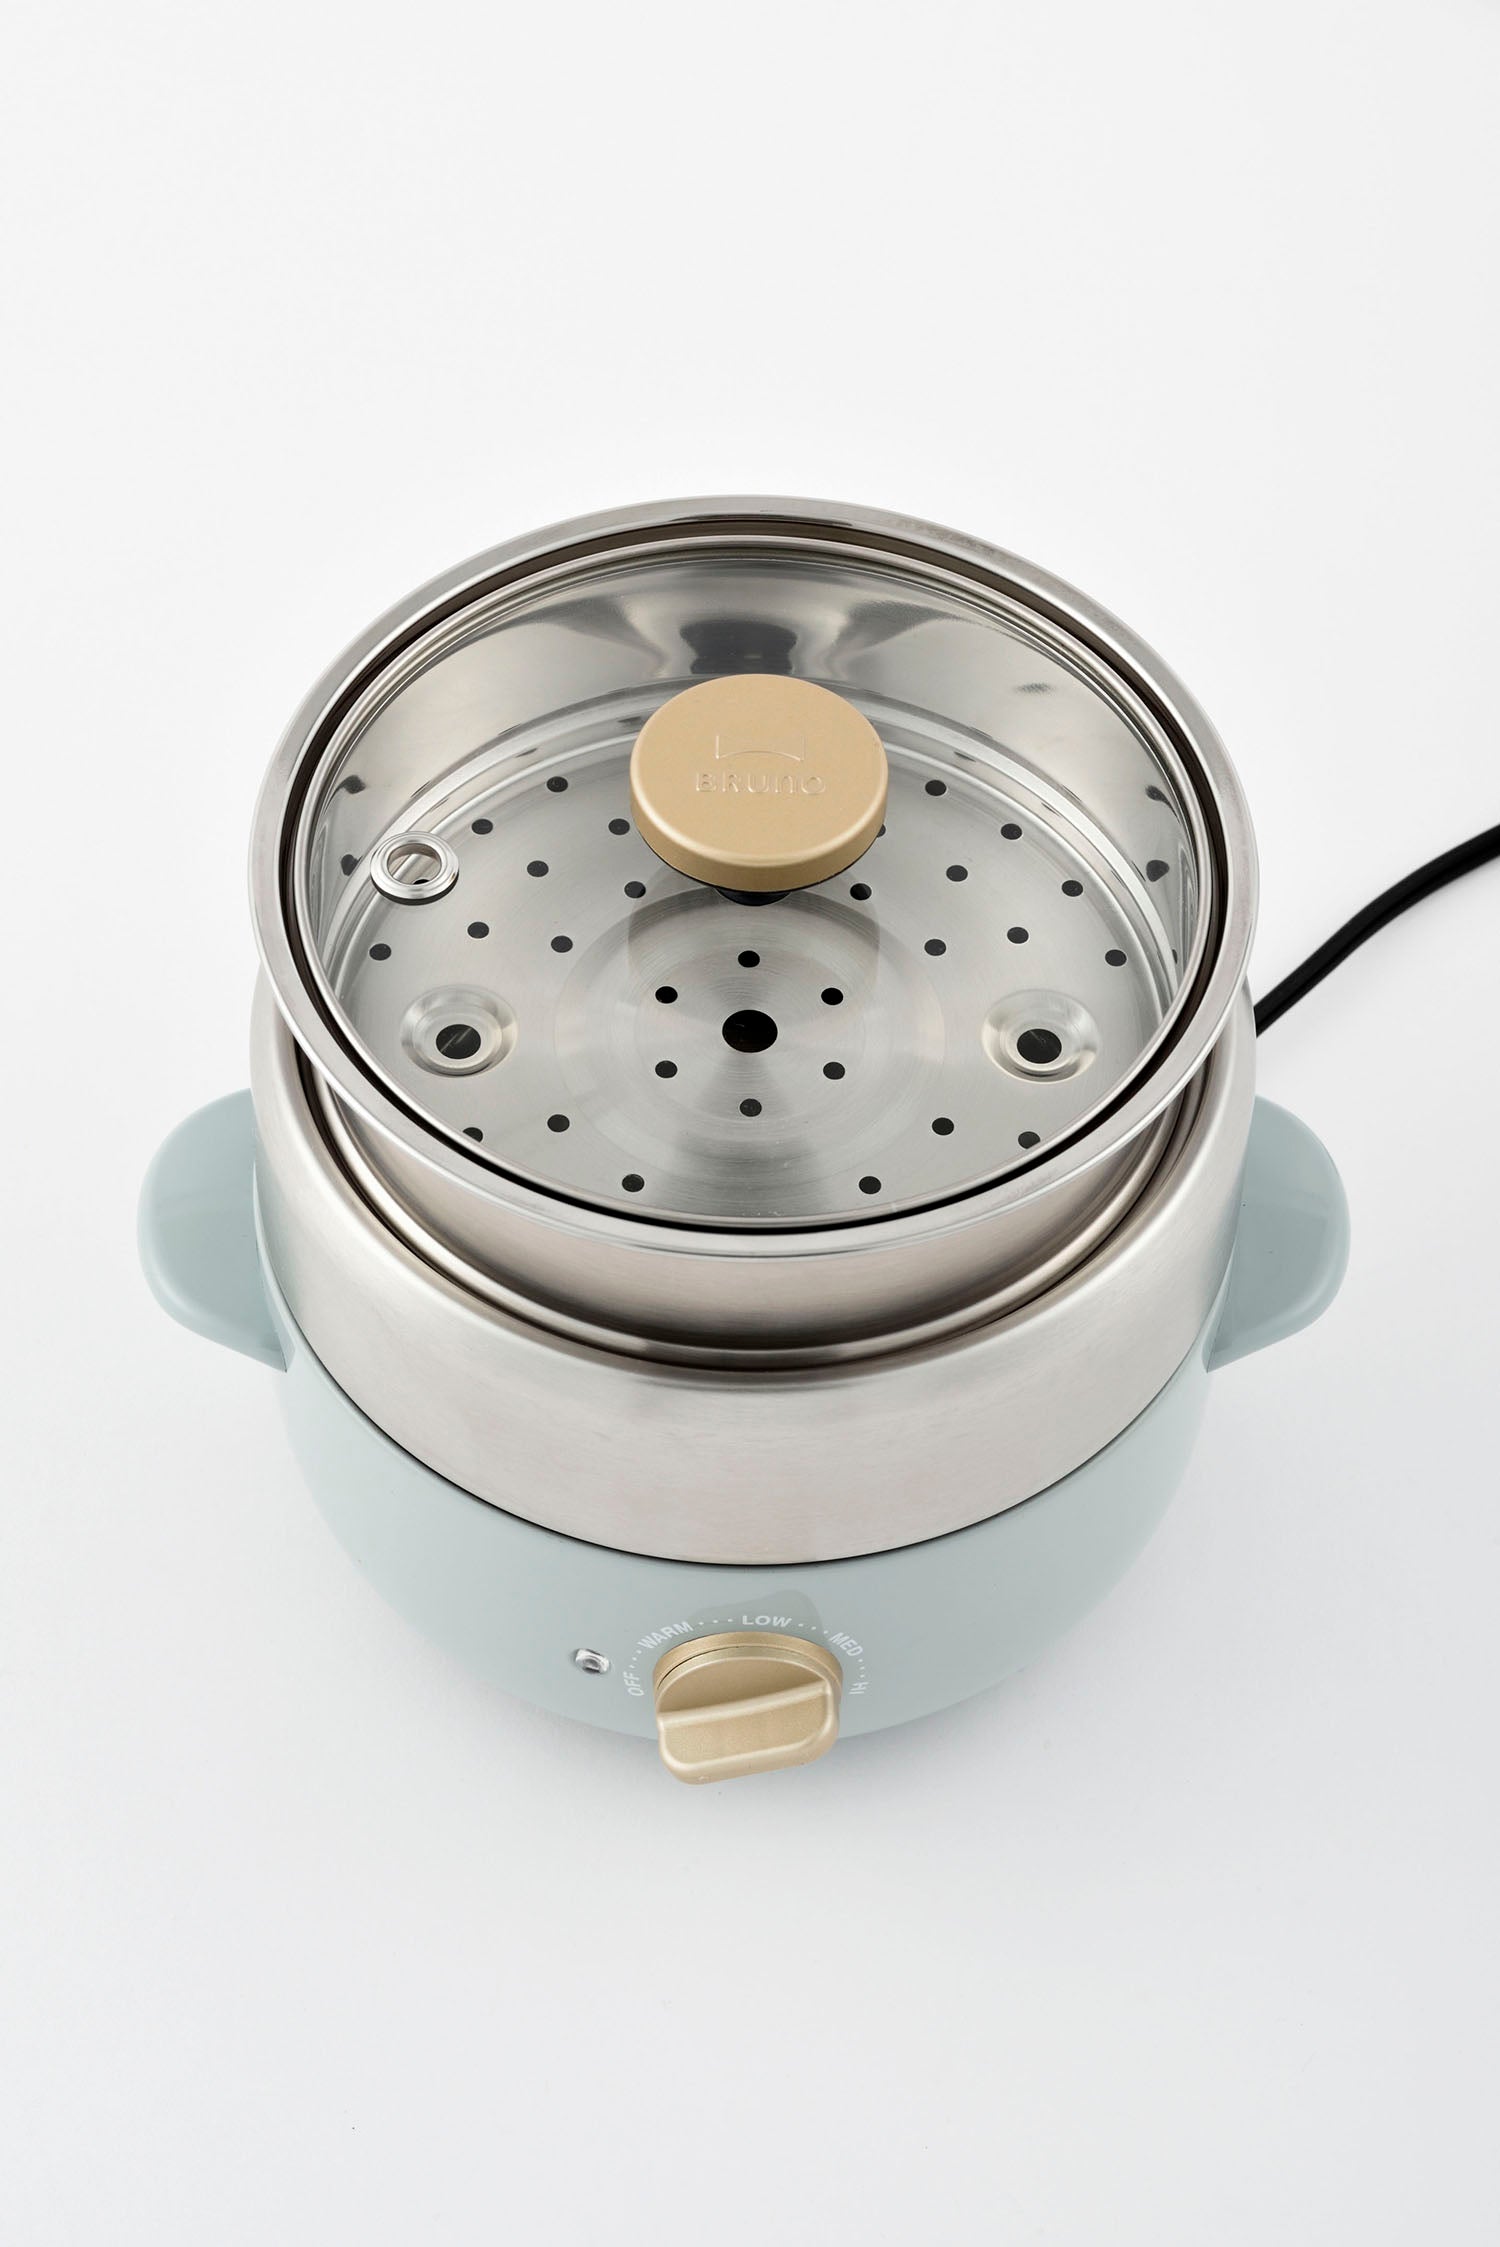 BRUNO Compact Multi Grill Pot - White BOE115-WH